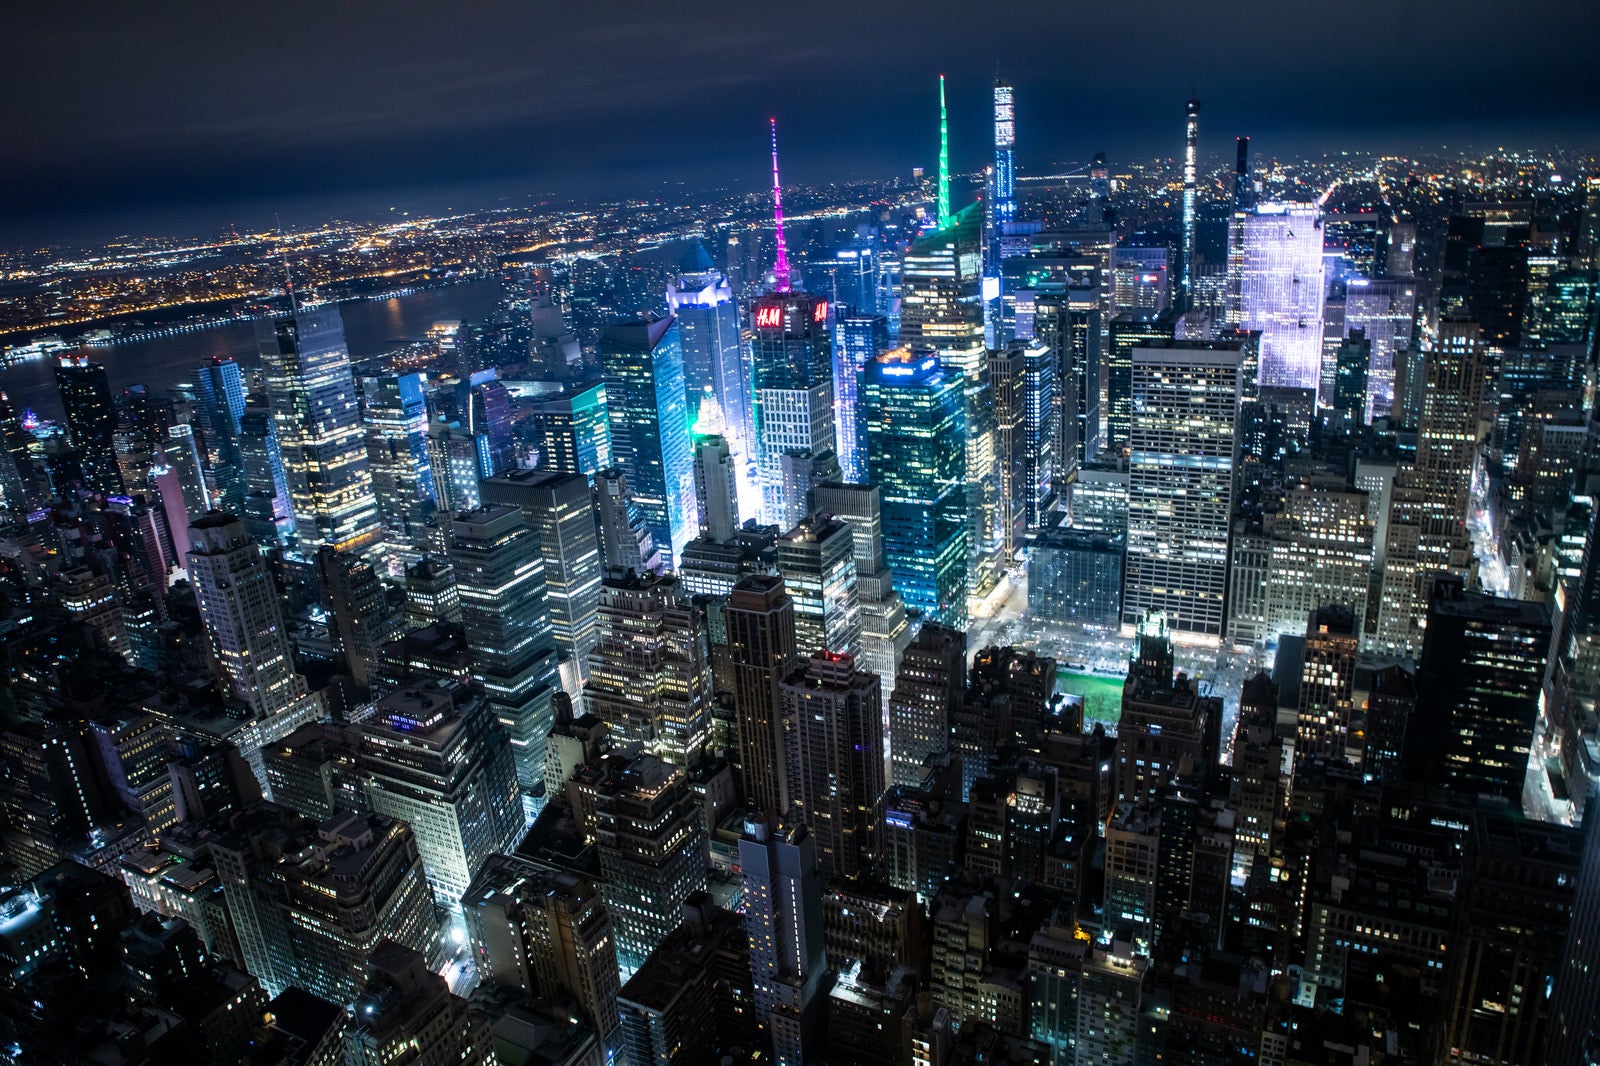 「ニューヨークに聳え立つビル群の夜景」の写真